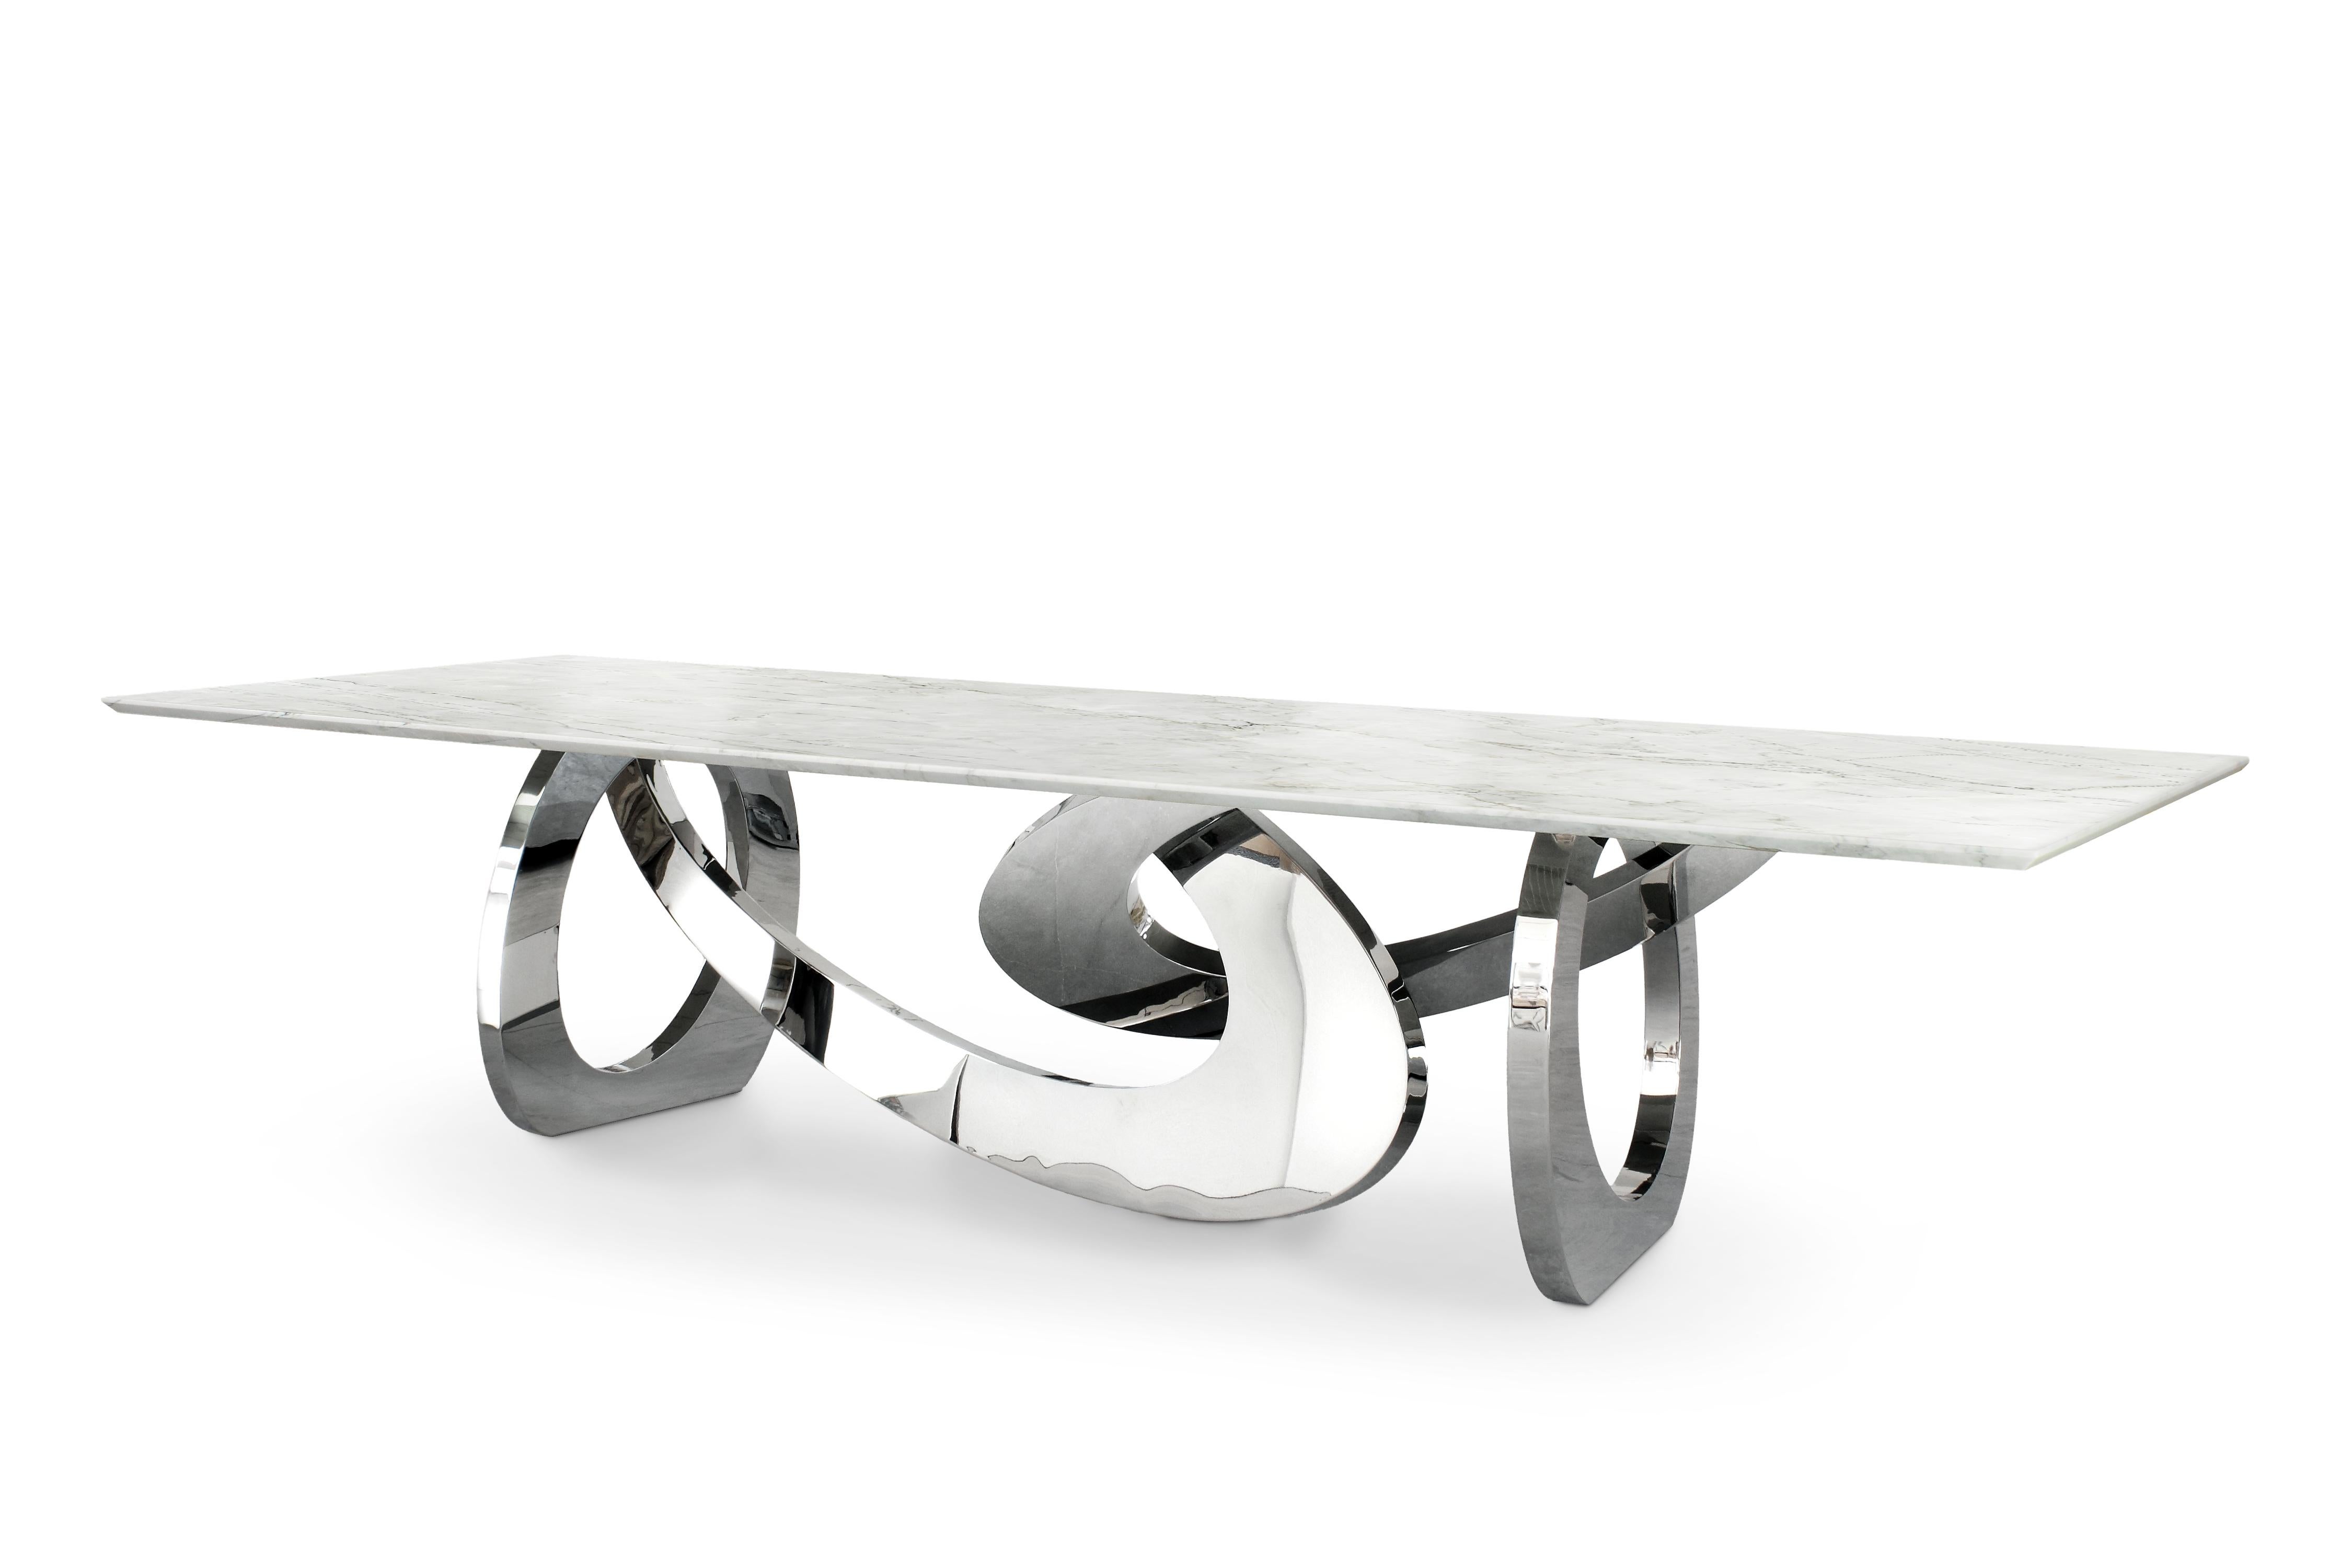 Der Tisch 'Bangles' ist ein bedeutender kultureller Esstisch mit einer Struktur aus hochglanzpoliertem Edelstahl und einer Platte aus Tahiti-Quarzit (Herkunft: Brasilien). Jeder einzelne Armreif wird von Hand geschweißt und hochglanzpoliert. Die